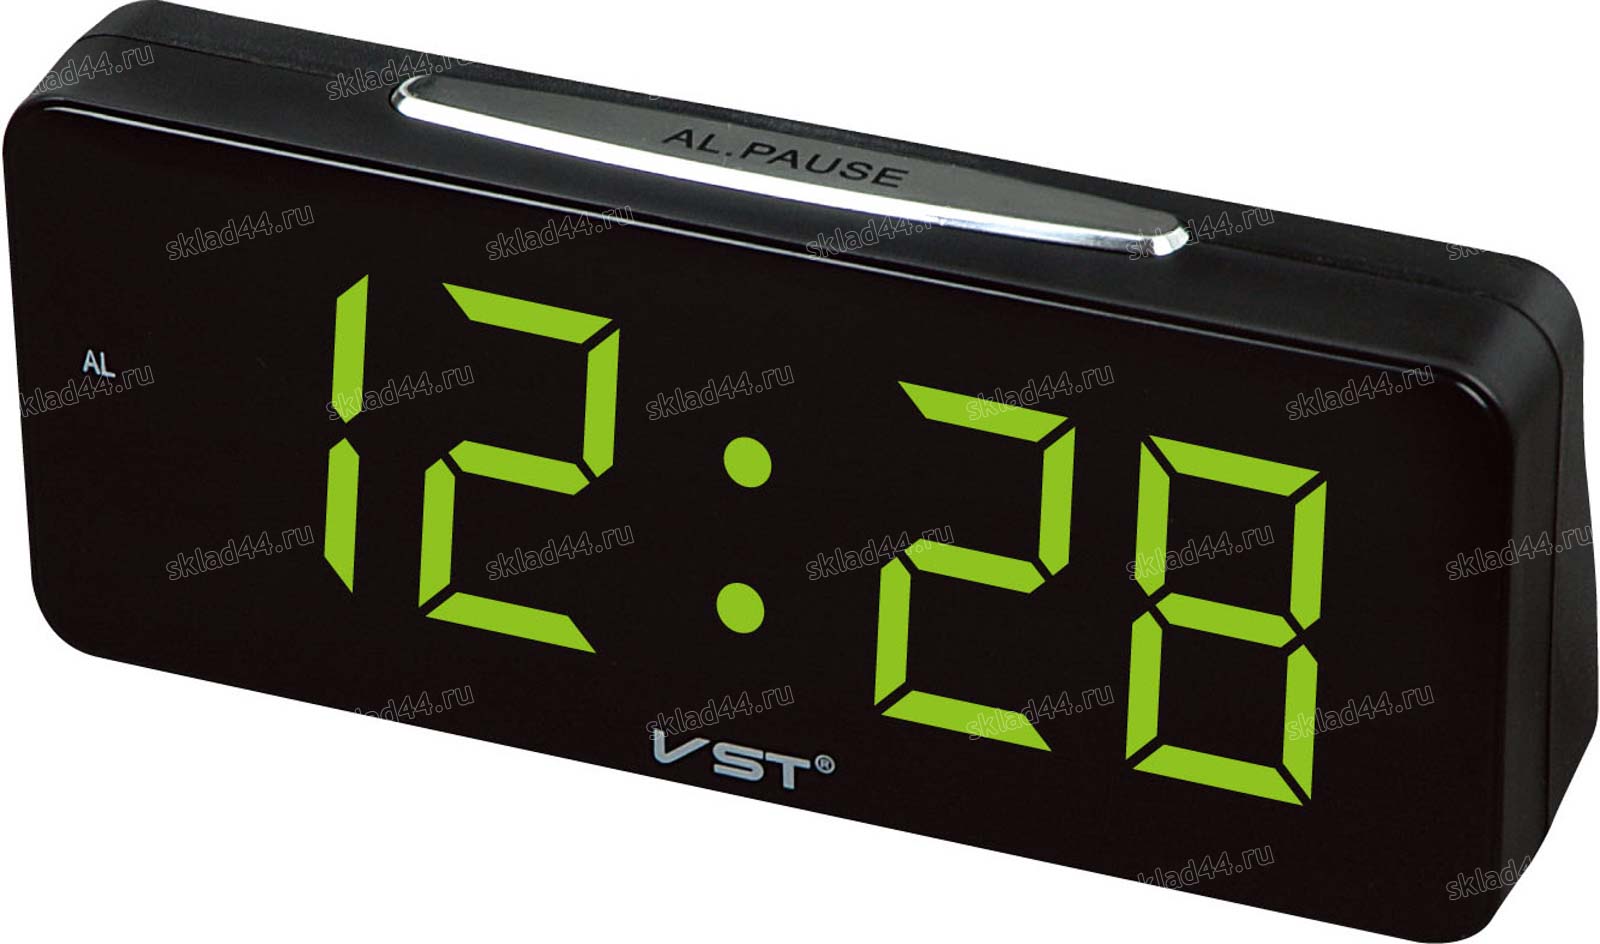 Настольные часы будильник vst. Часы VST-719t. Электронные часы VST 719-4 зеленый. Настольные часы VST 719-4. Электронные часы VST-763w.